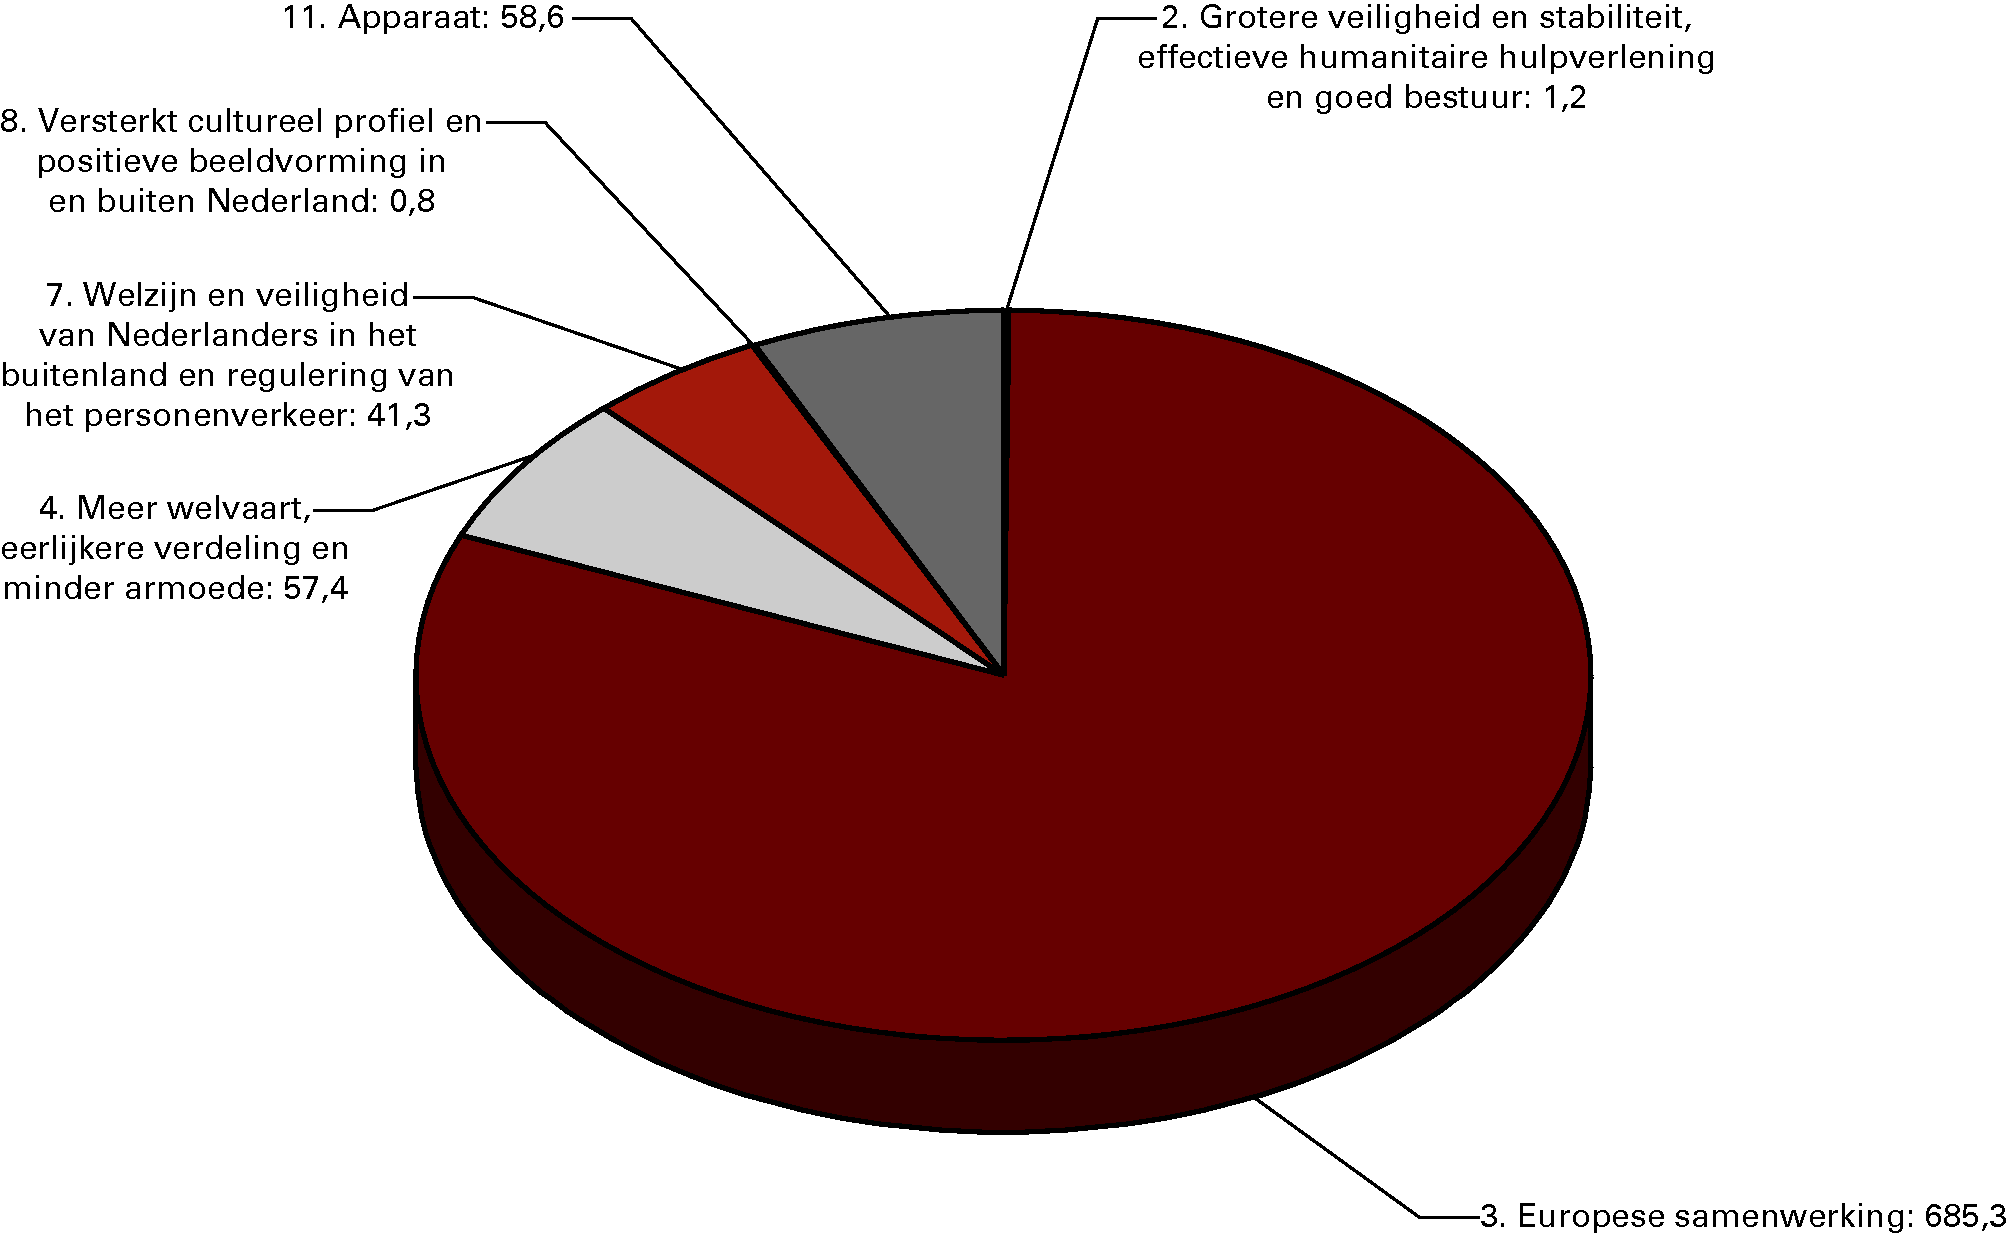 Begrote ontvangsten naar beleidsterrein voor 2013 (in EUR miljoen)